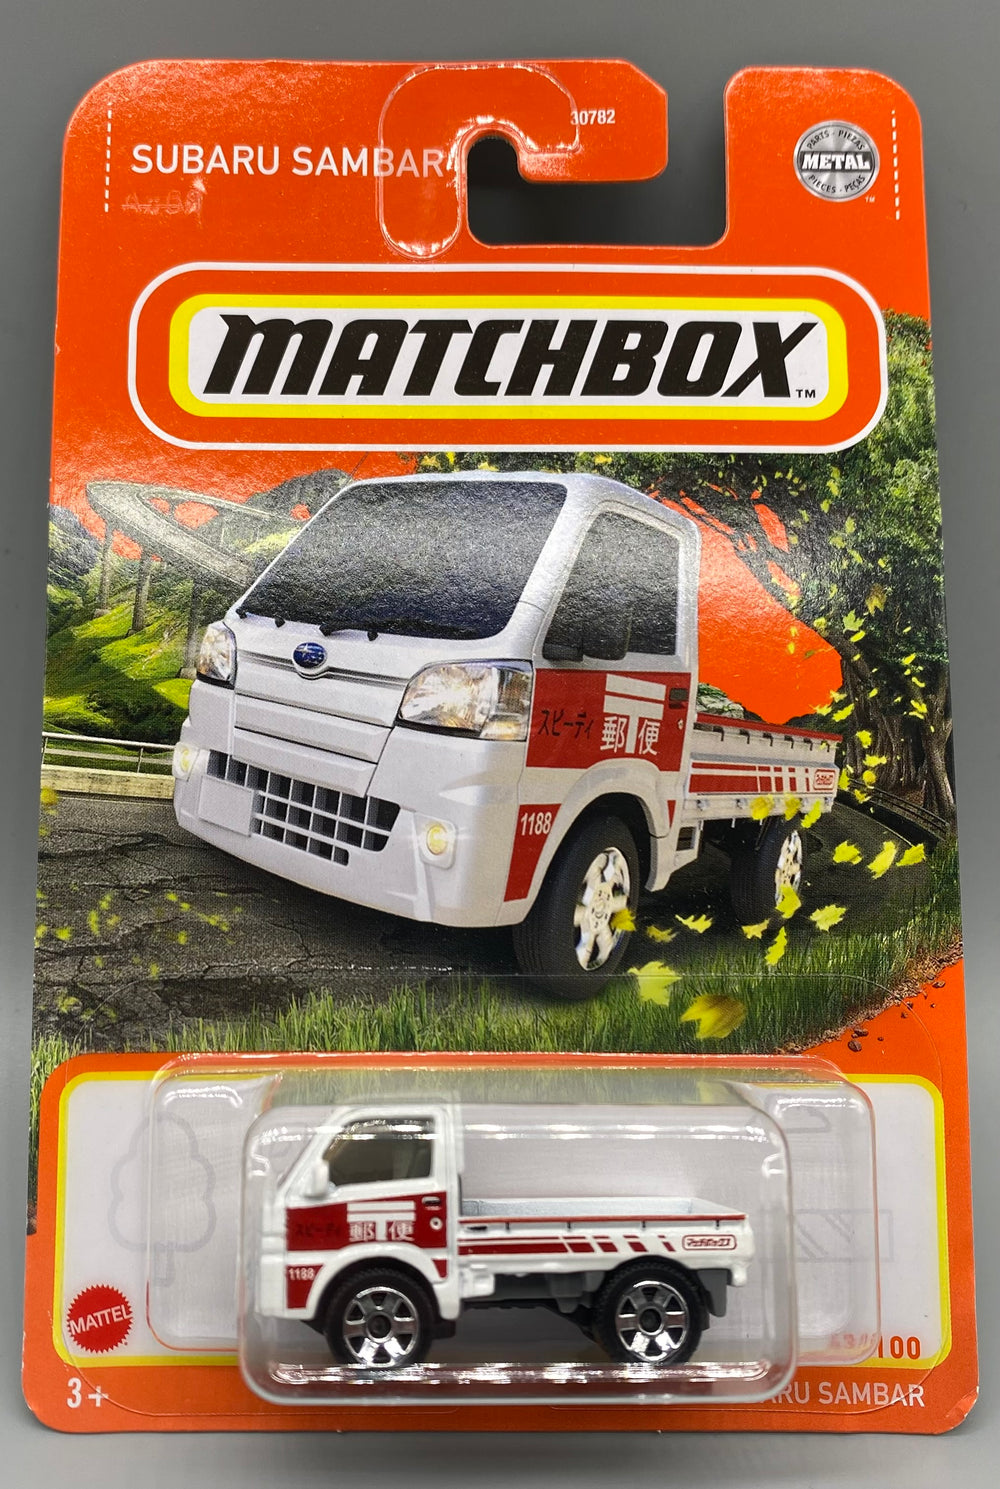 Matchbox Subaru Sambar